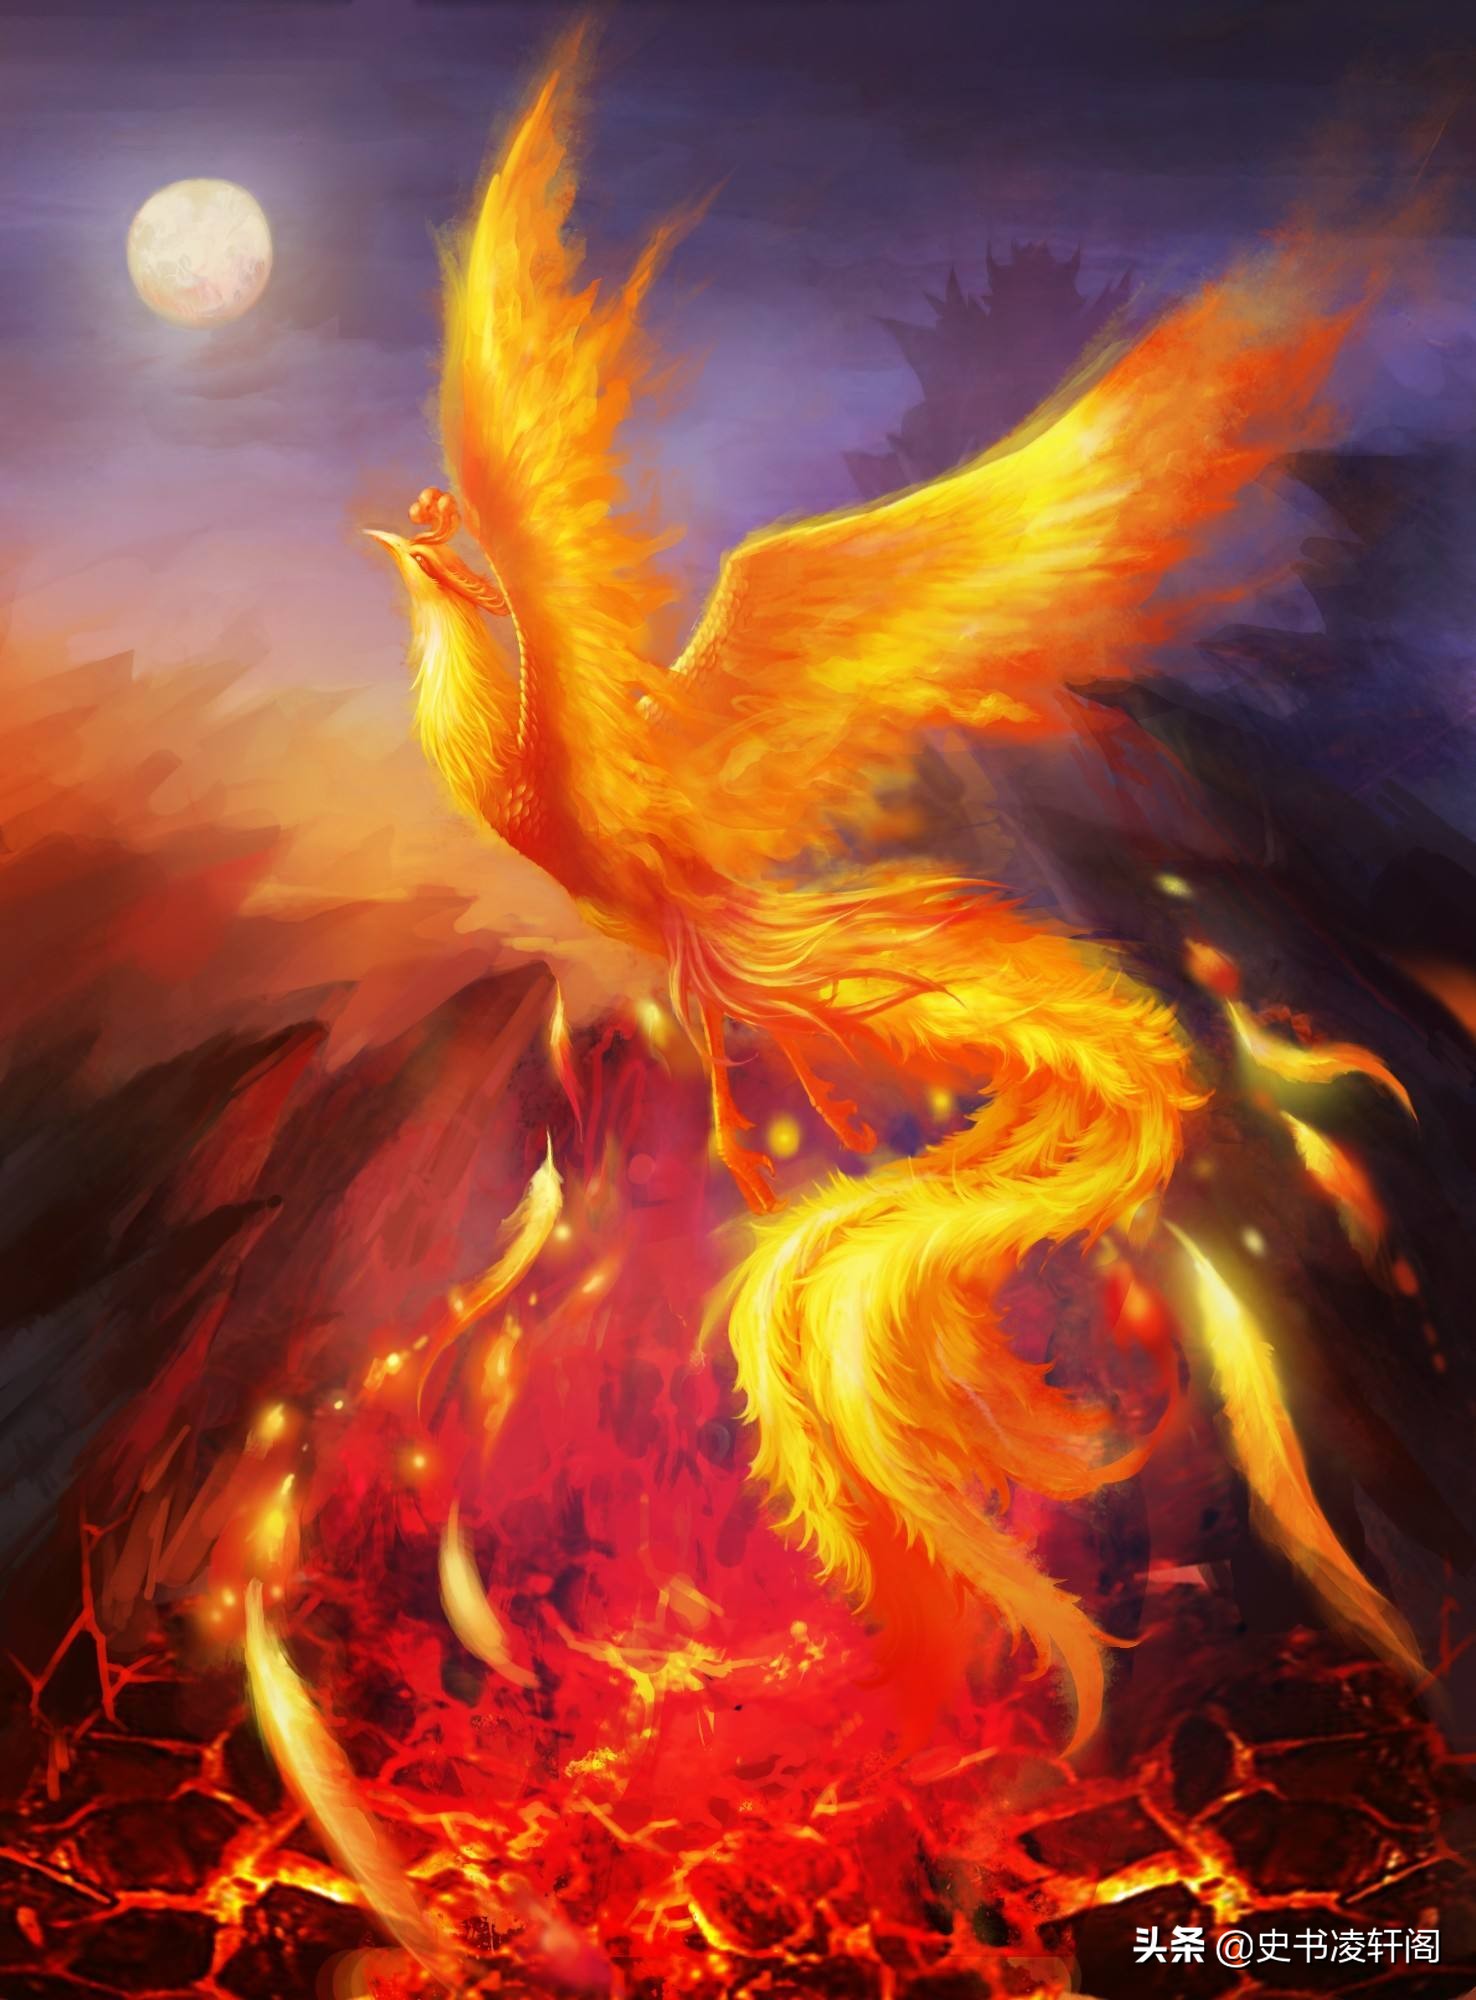 上古神话中,凤凰,龙和麒麟的先祖分别是哪种异兽?